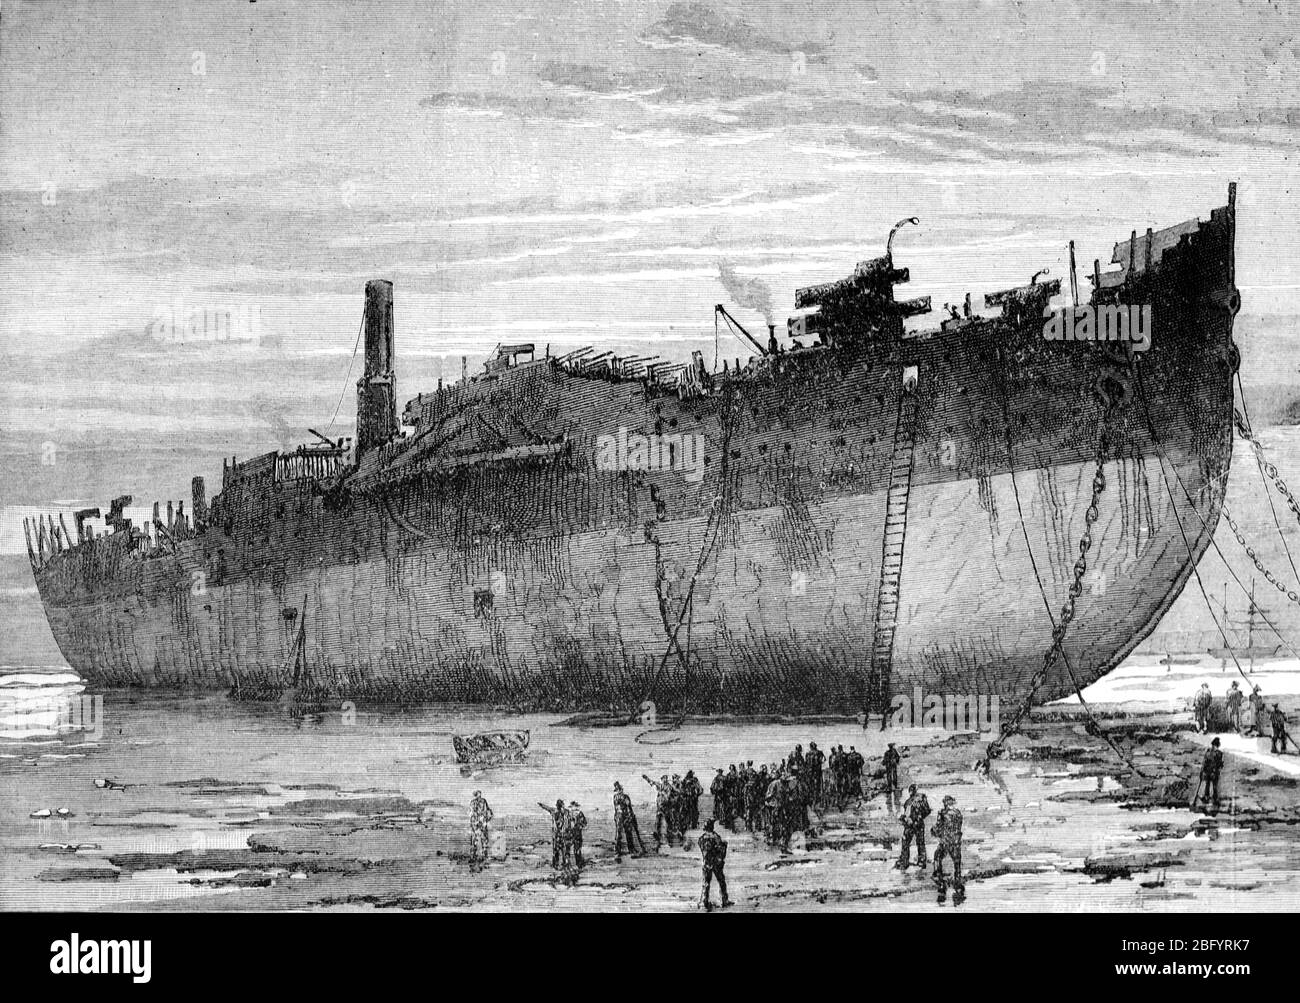 Schiff brechen oder Abbau der SS Great Eastern (1858-1890) das größte Eiserne Dampfschiff der Welt seiner Zeit; Vintage oder Alte Illustration oder Gravur 1890. Stockfoto